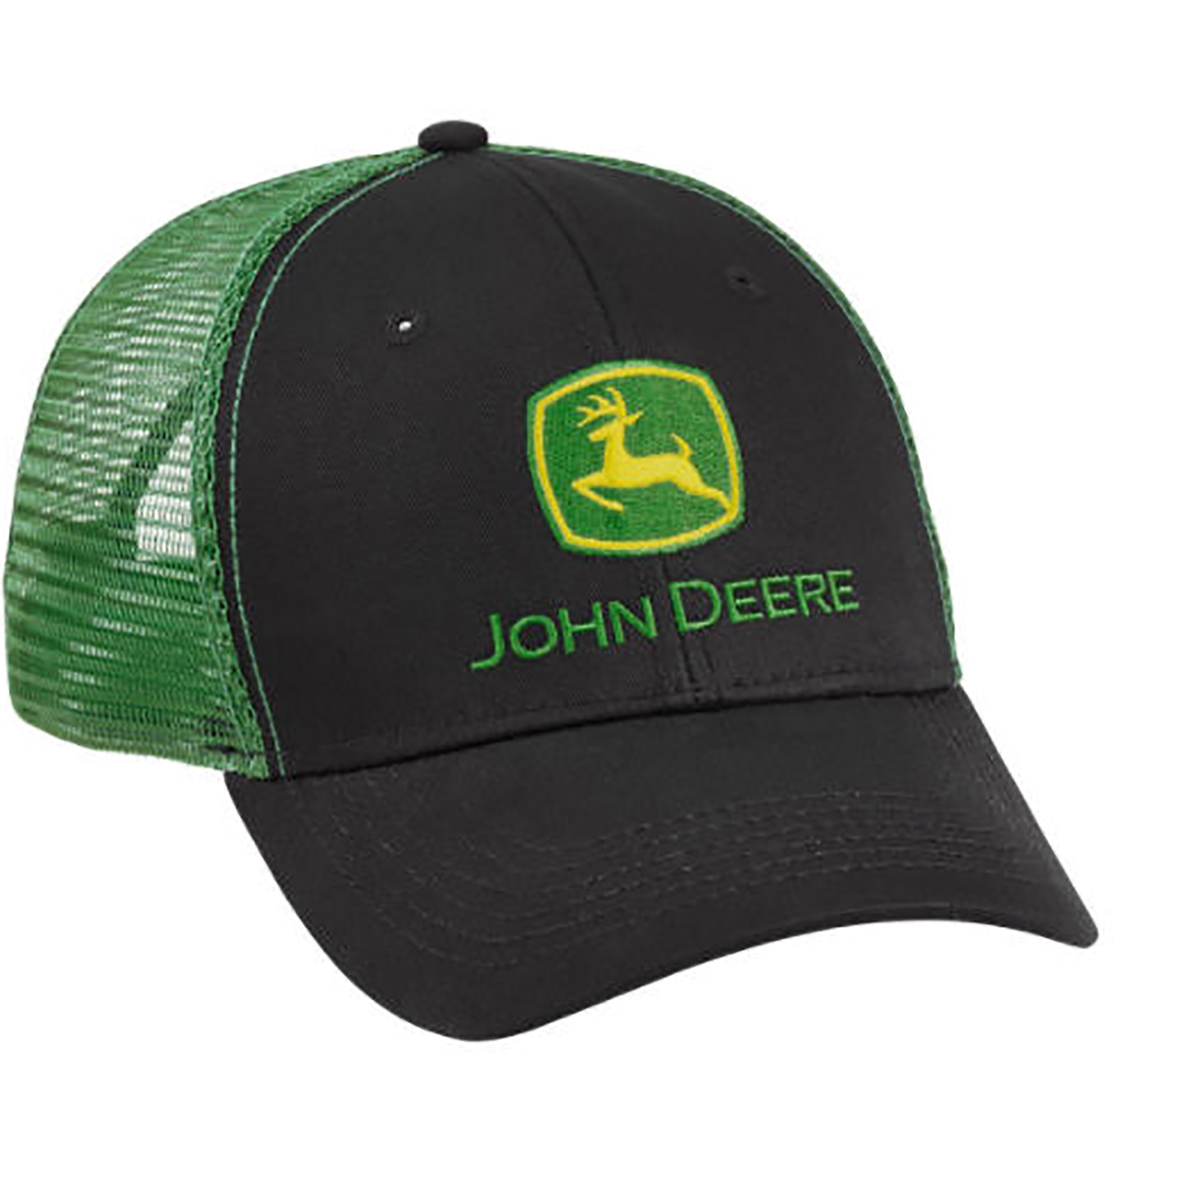 NEW John Deere Green Twill Visor Black  Mesh Back Cap  Hat LP67304 